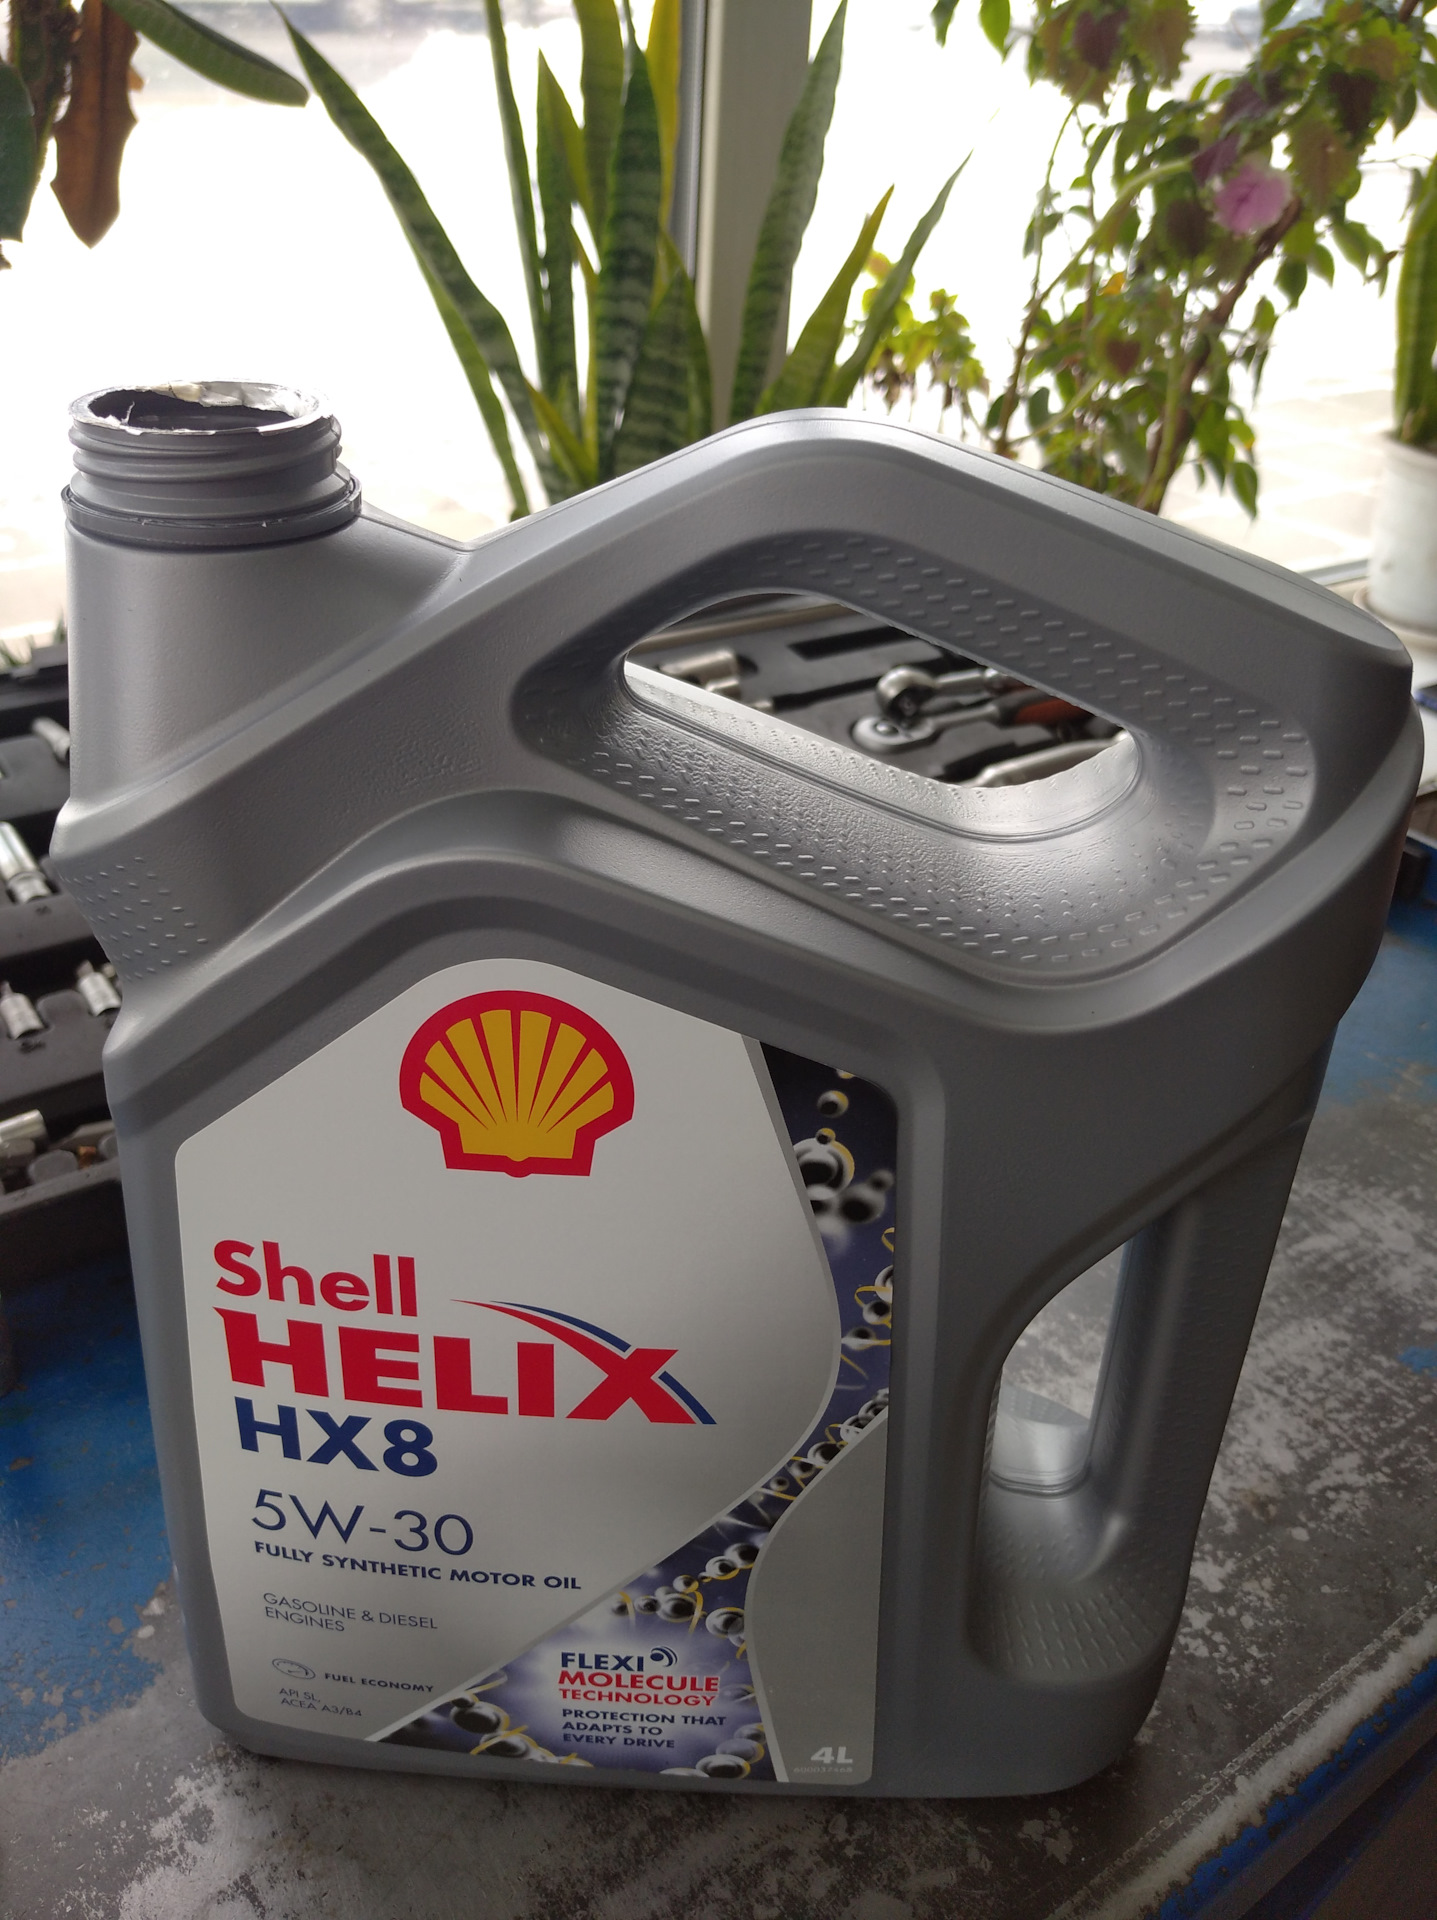 Shell hx8 a5